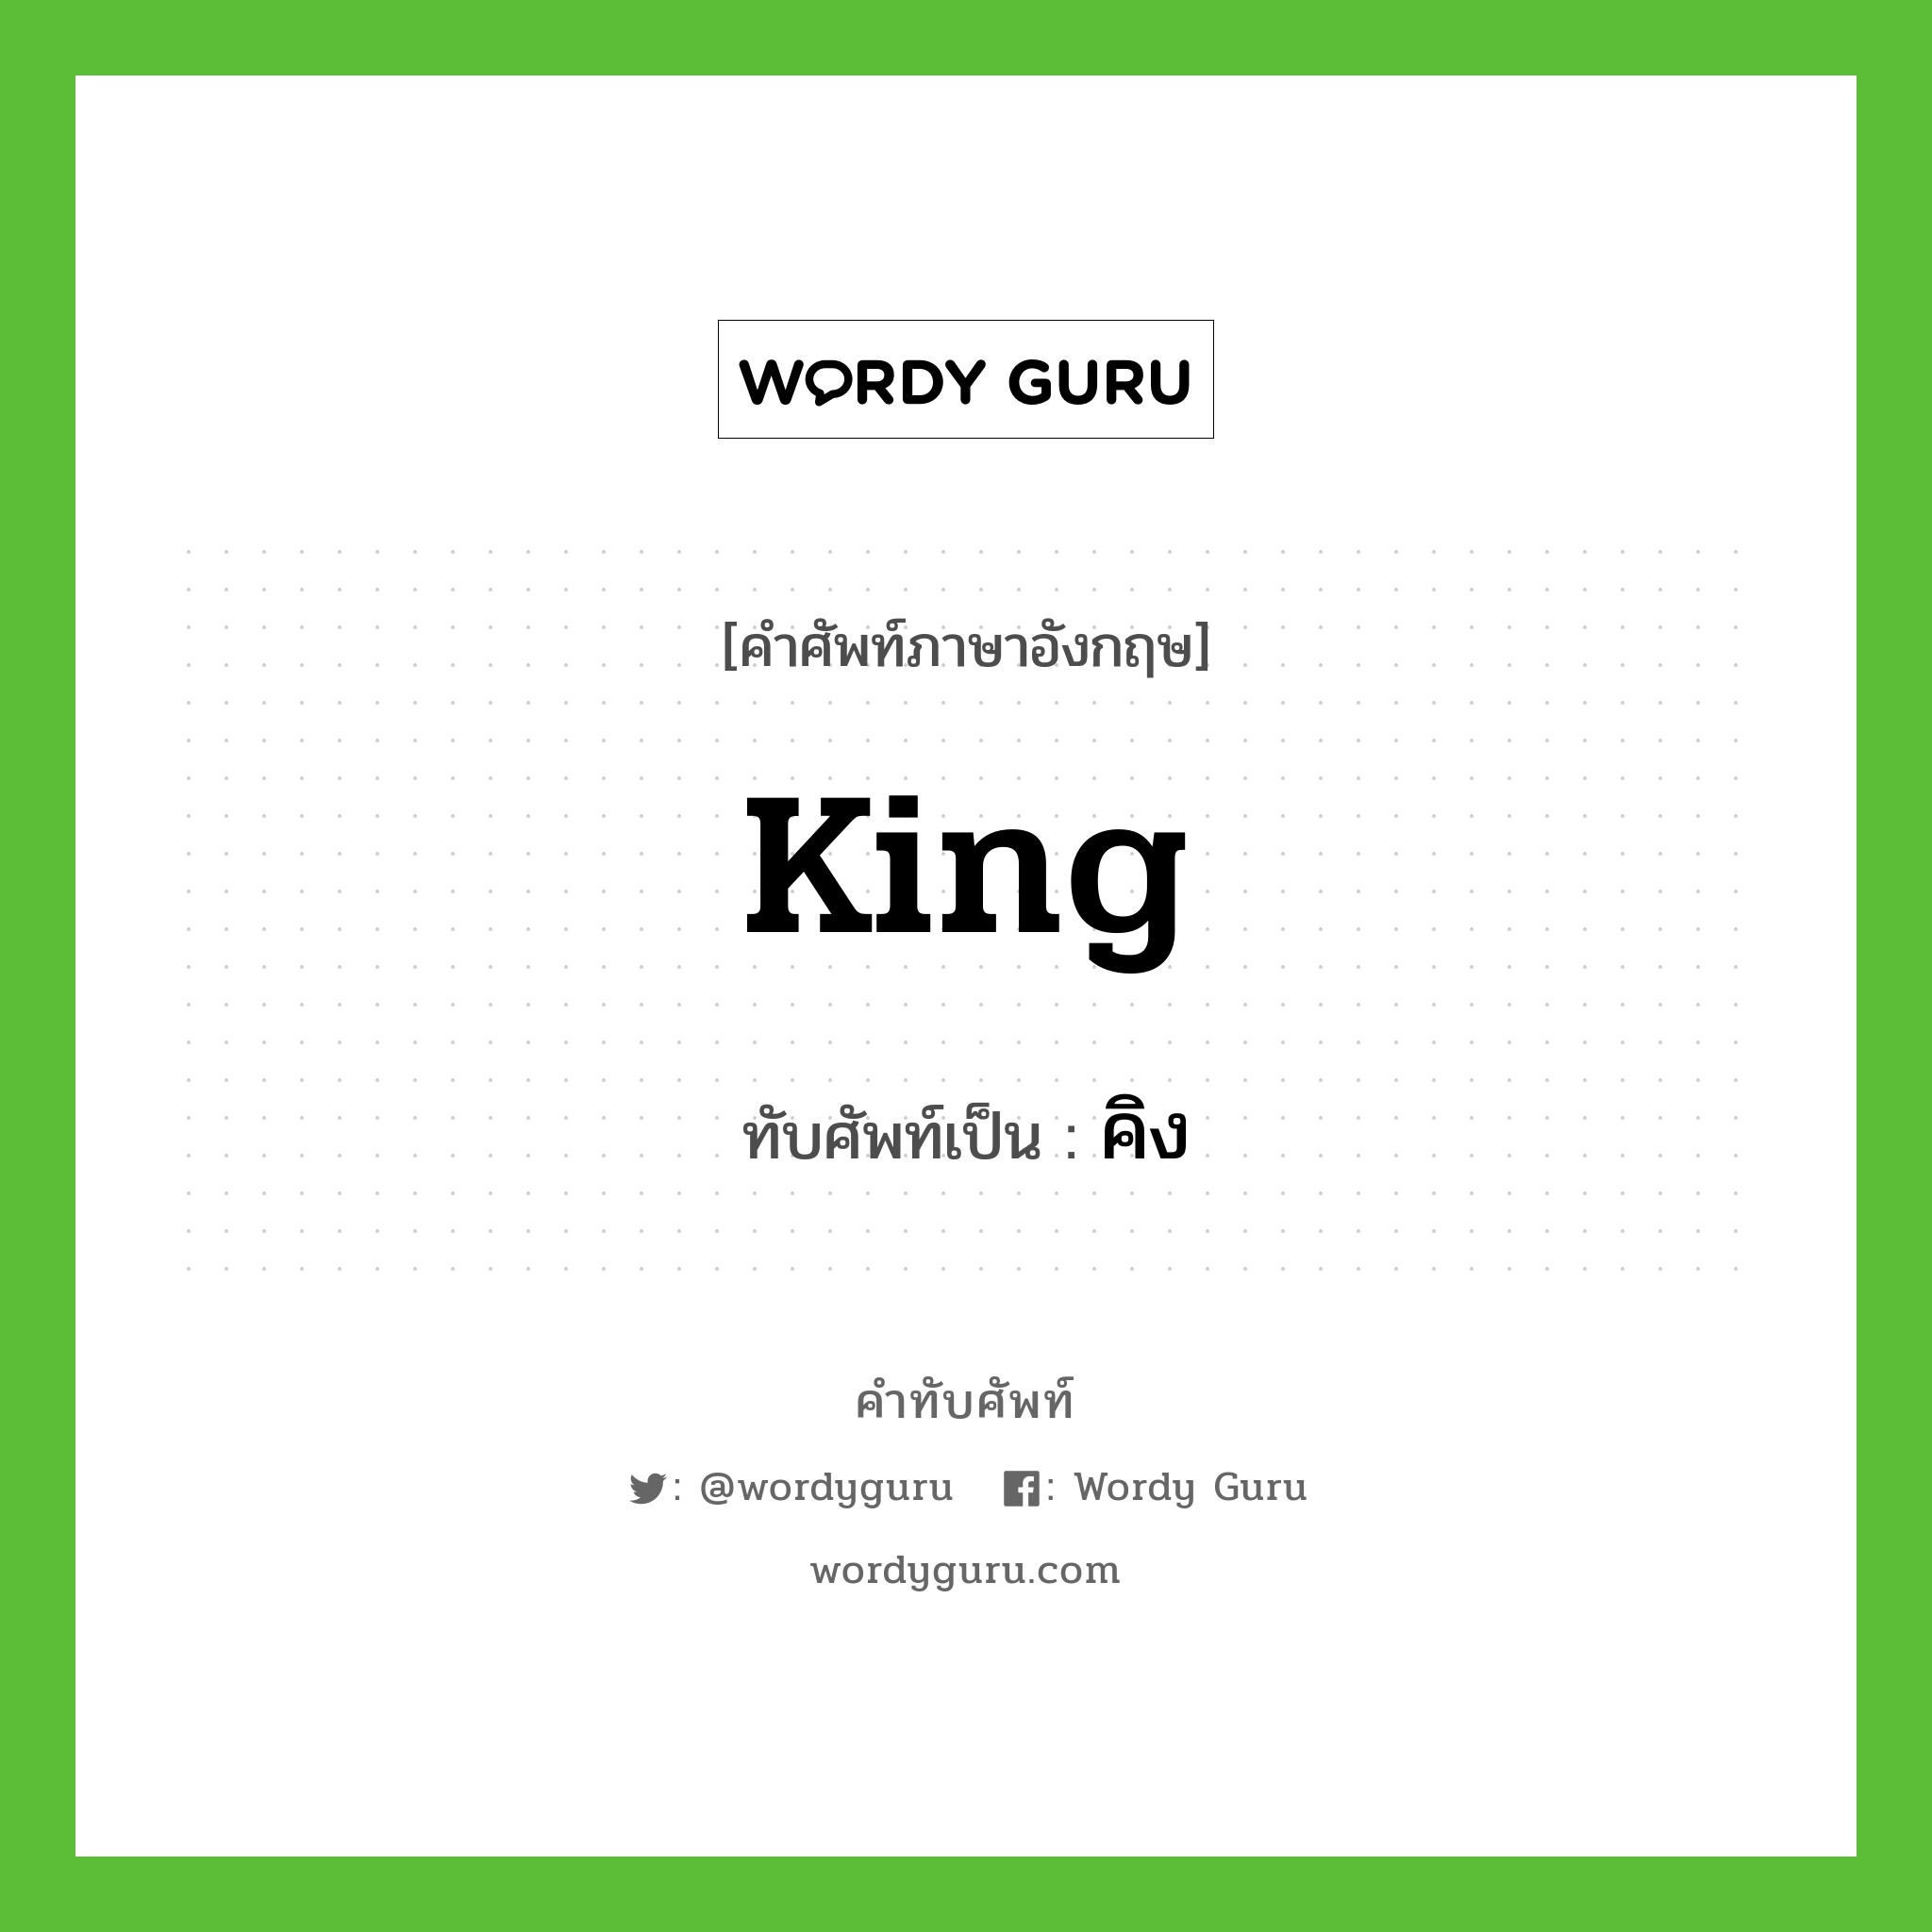 King เขียนเป็นคำไทยว่าอะไร?, คำศัพท์ภาษาอังกฤษ King ทับศัพท์เป็น คิง